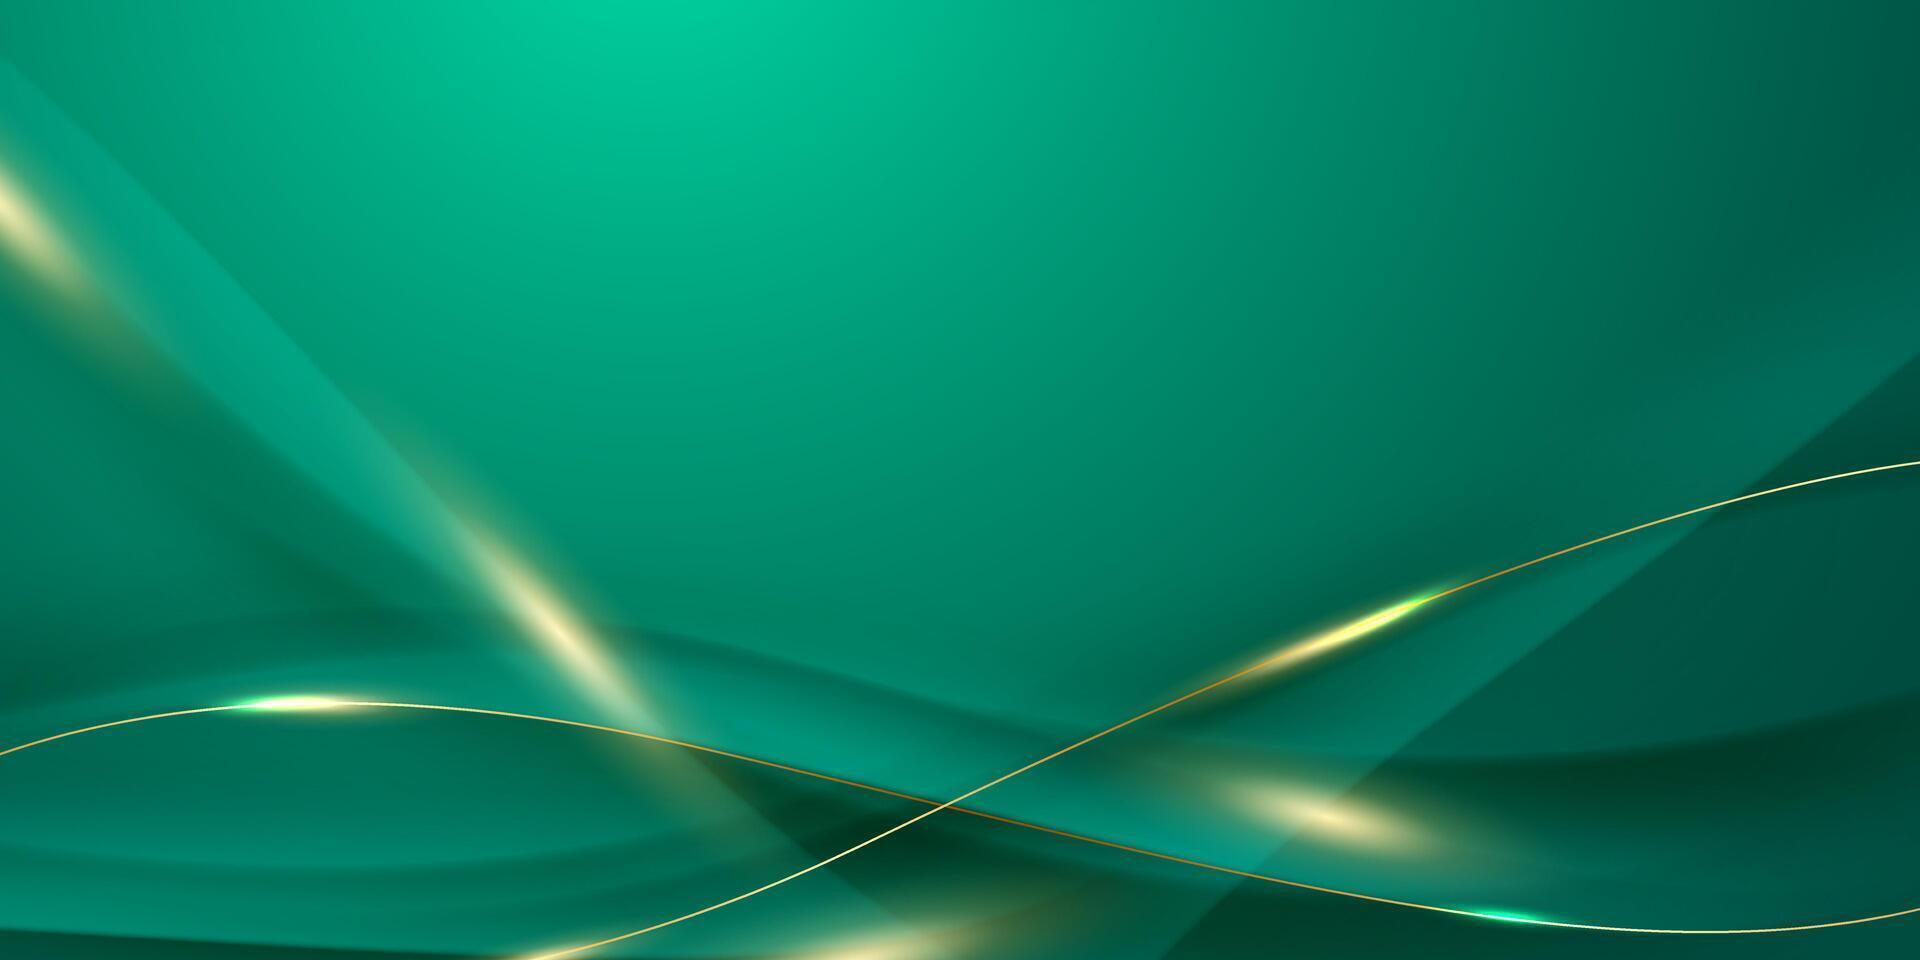 groen abstract achtergrond ontwerp met elegant gouden elementen vector illustratie